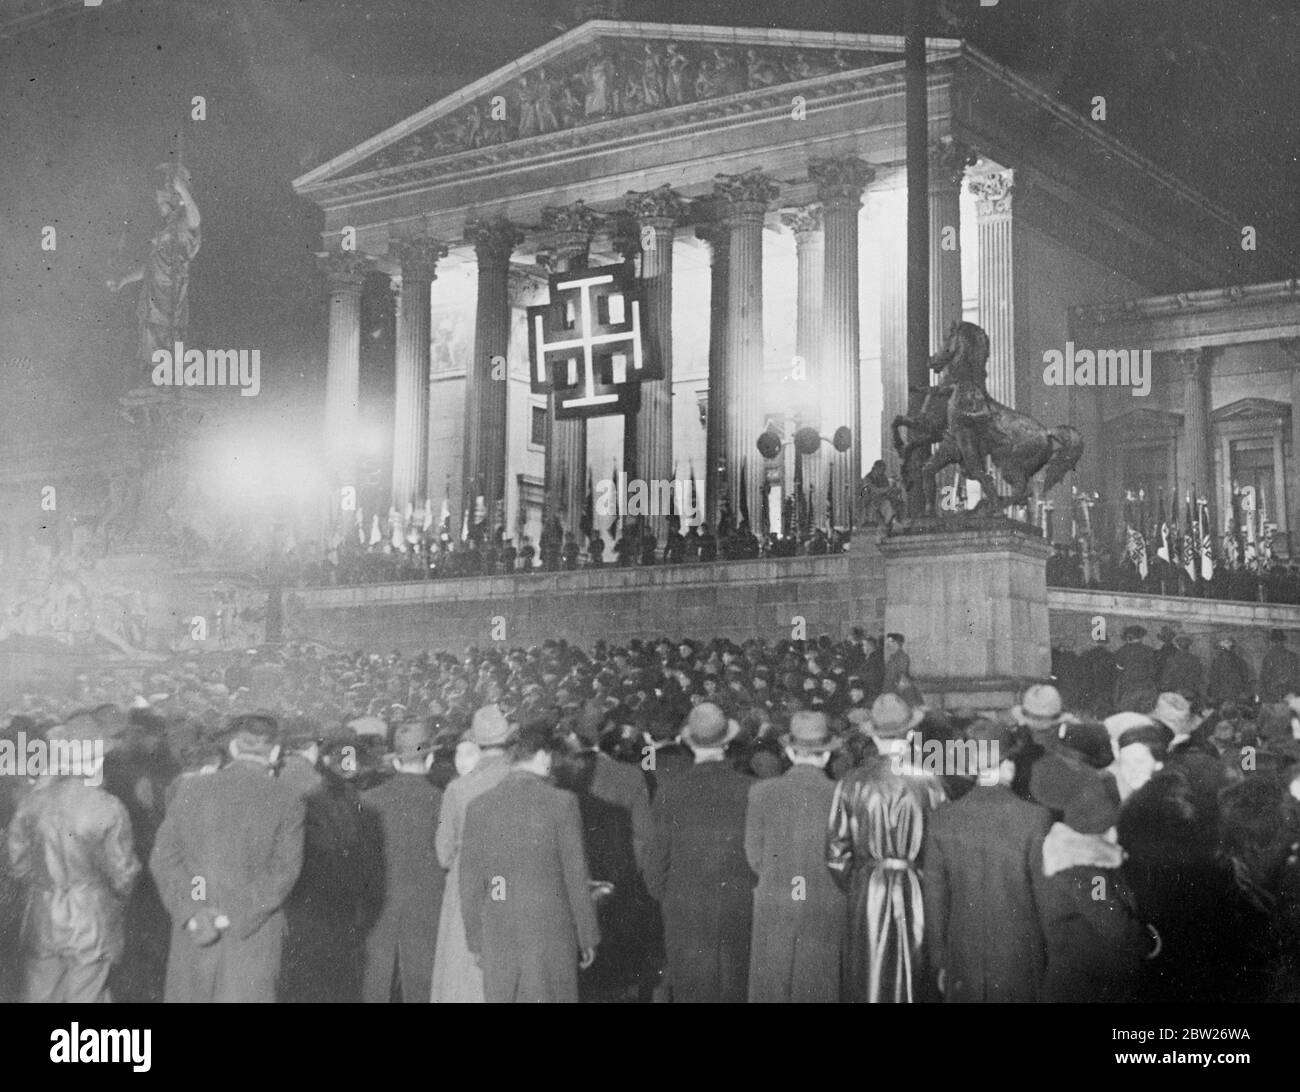 « l'Autriche restera libre ! », le discours provocateur du Dr Schuschnigg, dans lequel il a prononcé son discours devant le Parlement autrichien après son accord avec Hitler, souligne le fait que l'indépendance autrichienne serait maintenue. "L'Autriche restera libre", a-t-il déclaré, "et pour ce combat. Nous allons nous battre jusqu'à la mort. Heil Autriche!'. Après son discours, il a dirigé une foule de 4000 partisans à travers Vienne. Des séances photo, la foule écoutant devant le Parlement éclairé de Vienne alors que le discours de la chancelière était relayé par des haut-parleurs. 25 février 26 1938 Banque D'Images